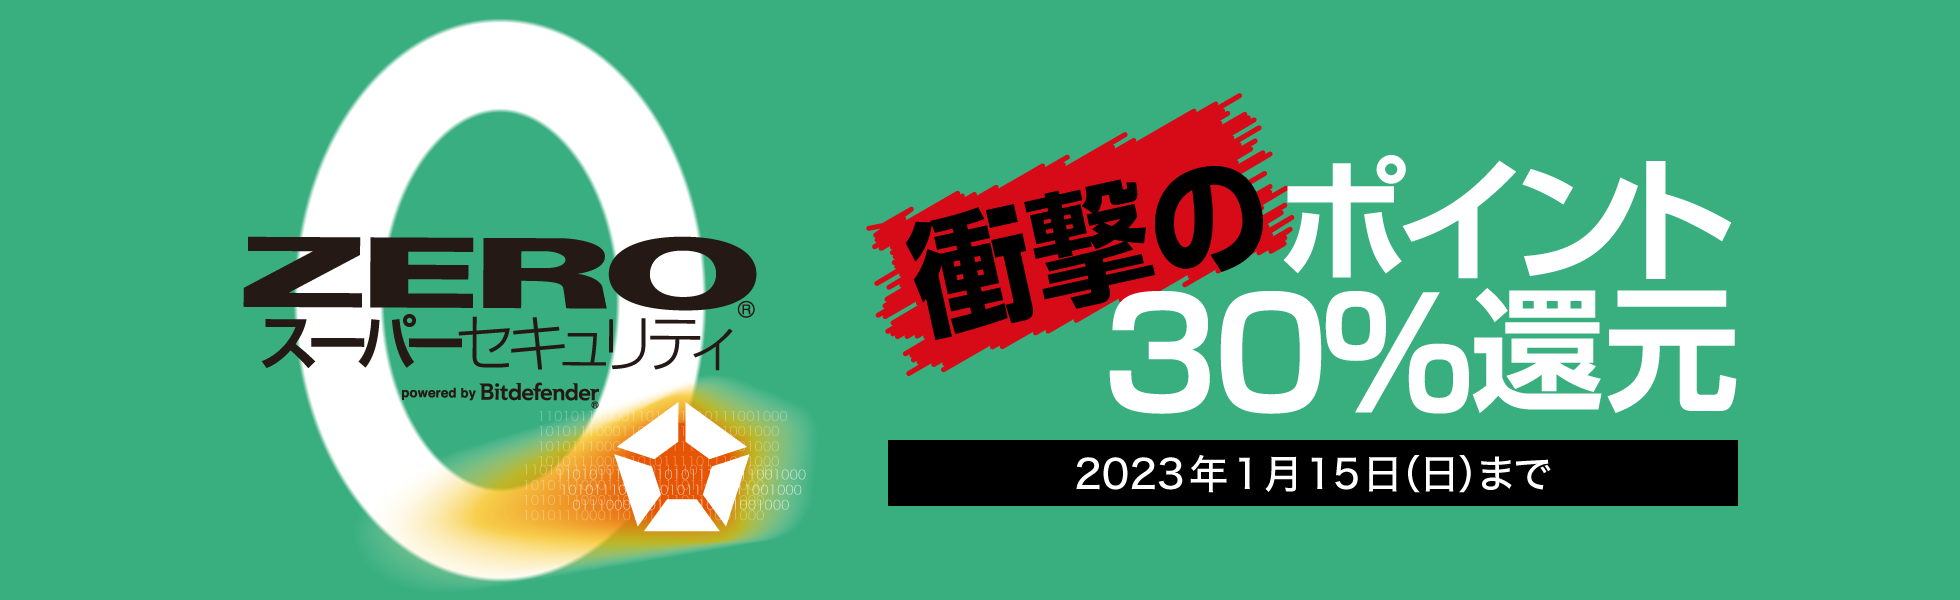 ポイント30%還元キャンペーン/ ZERO スーパーセキュリティ